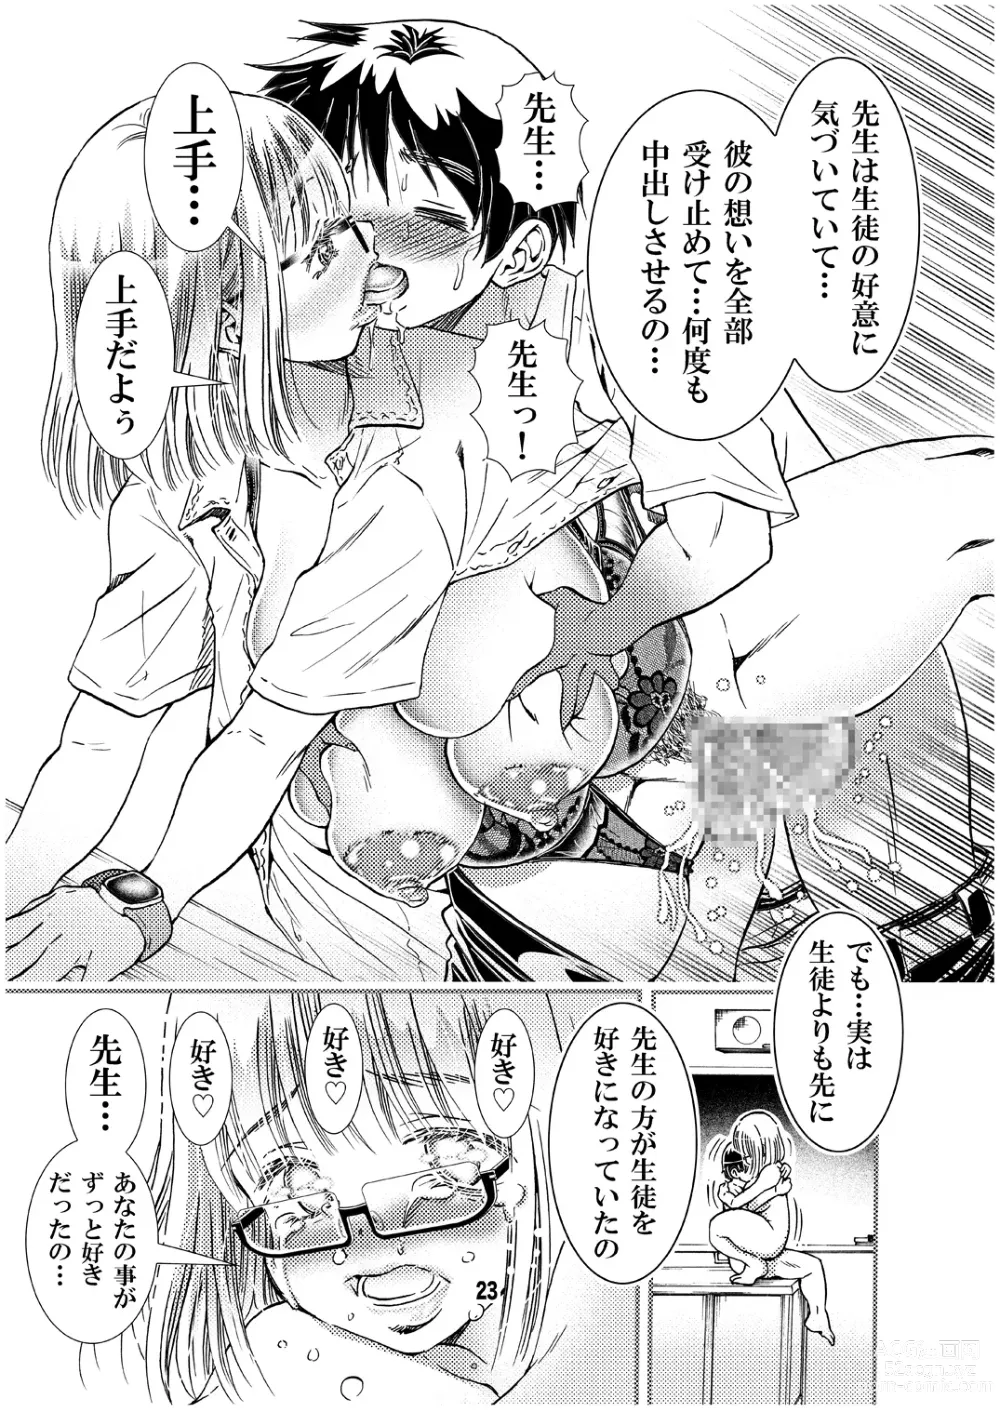 Page 23 of doujinshi Sensei to Shugaku Ryoko Hatsu Ecchi Doujinshiban